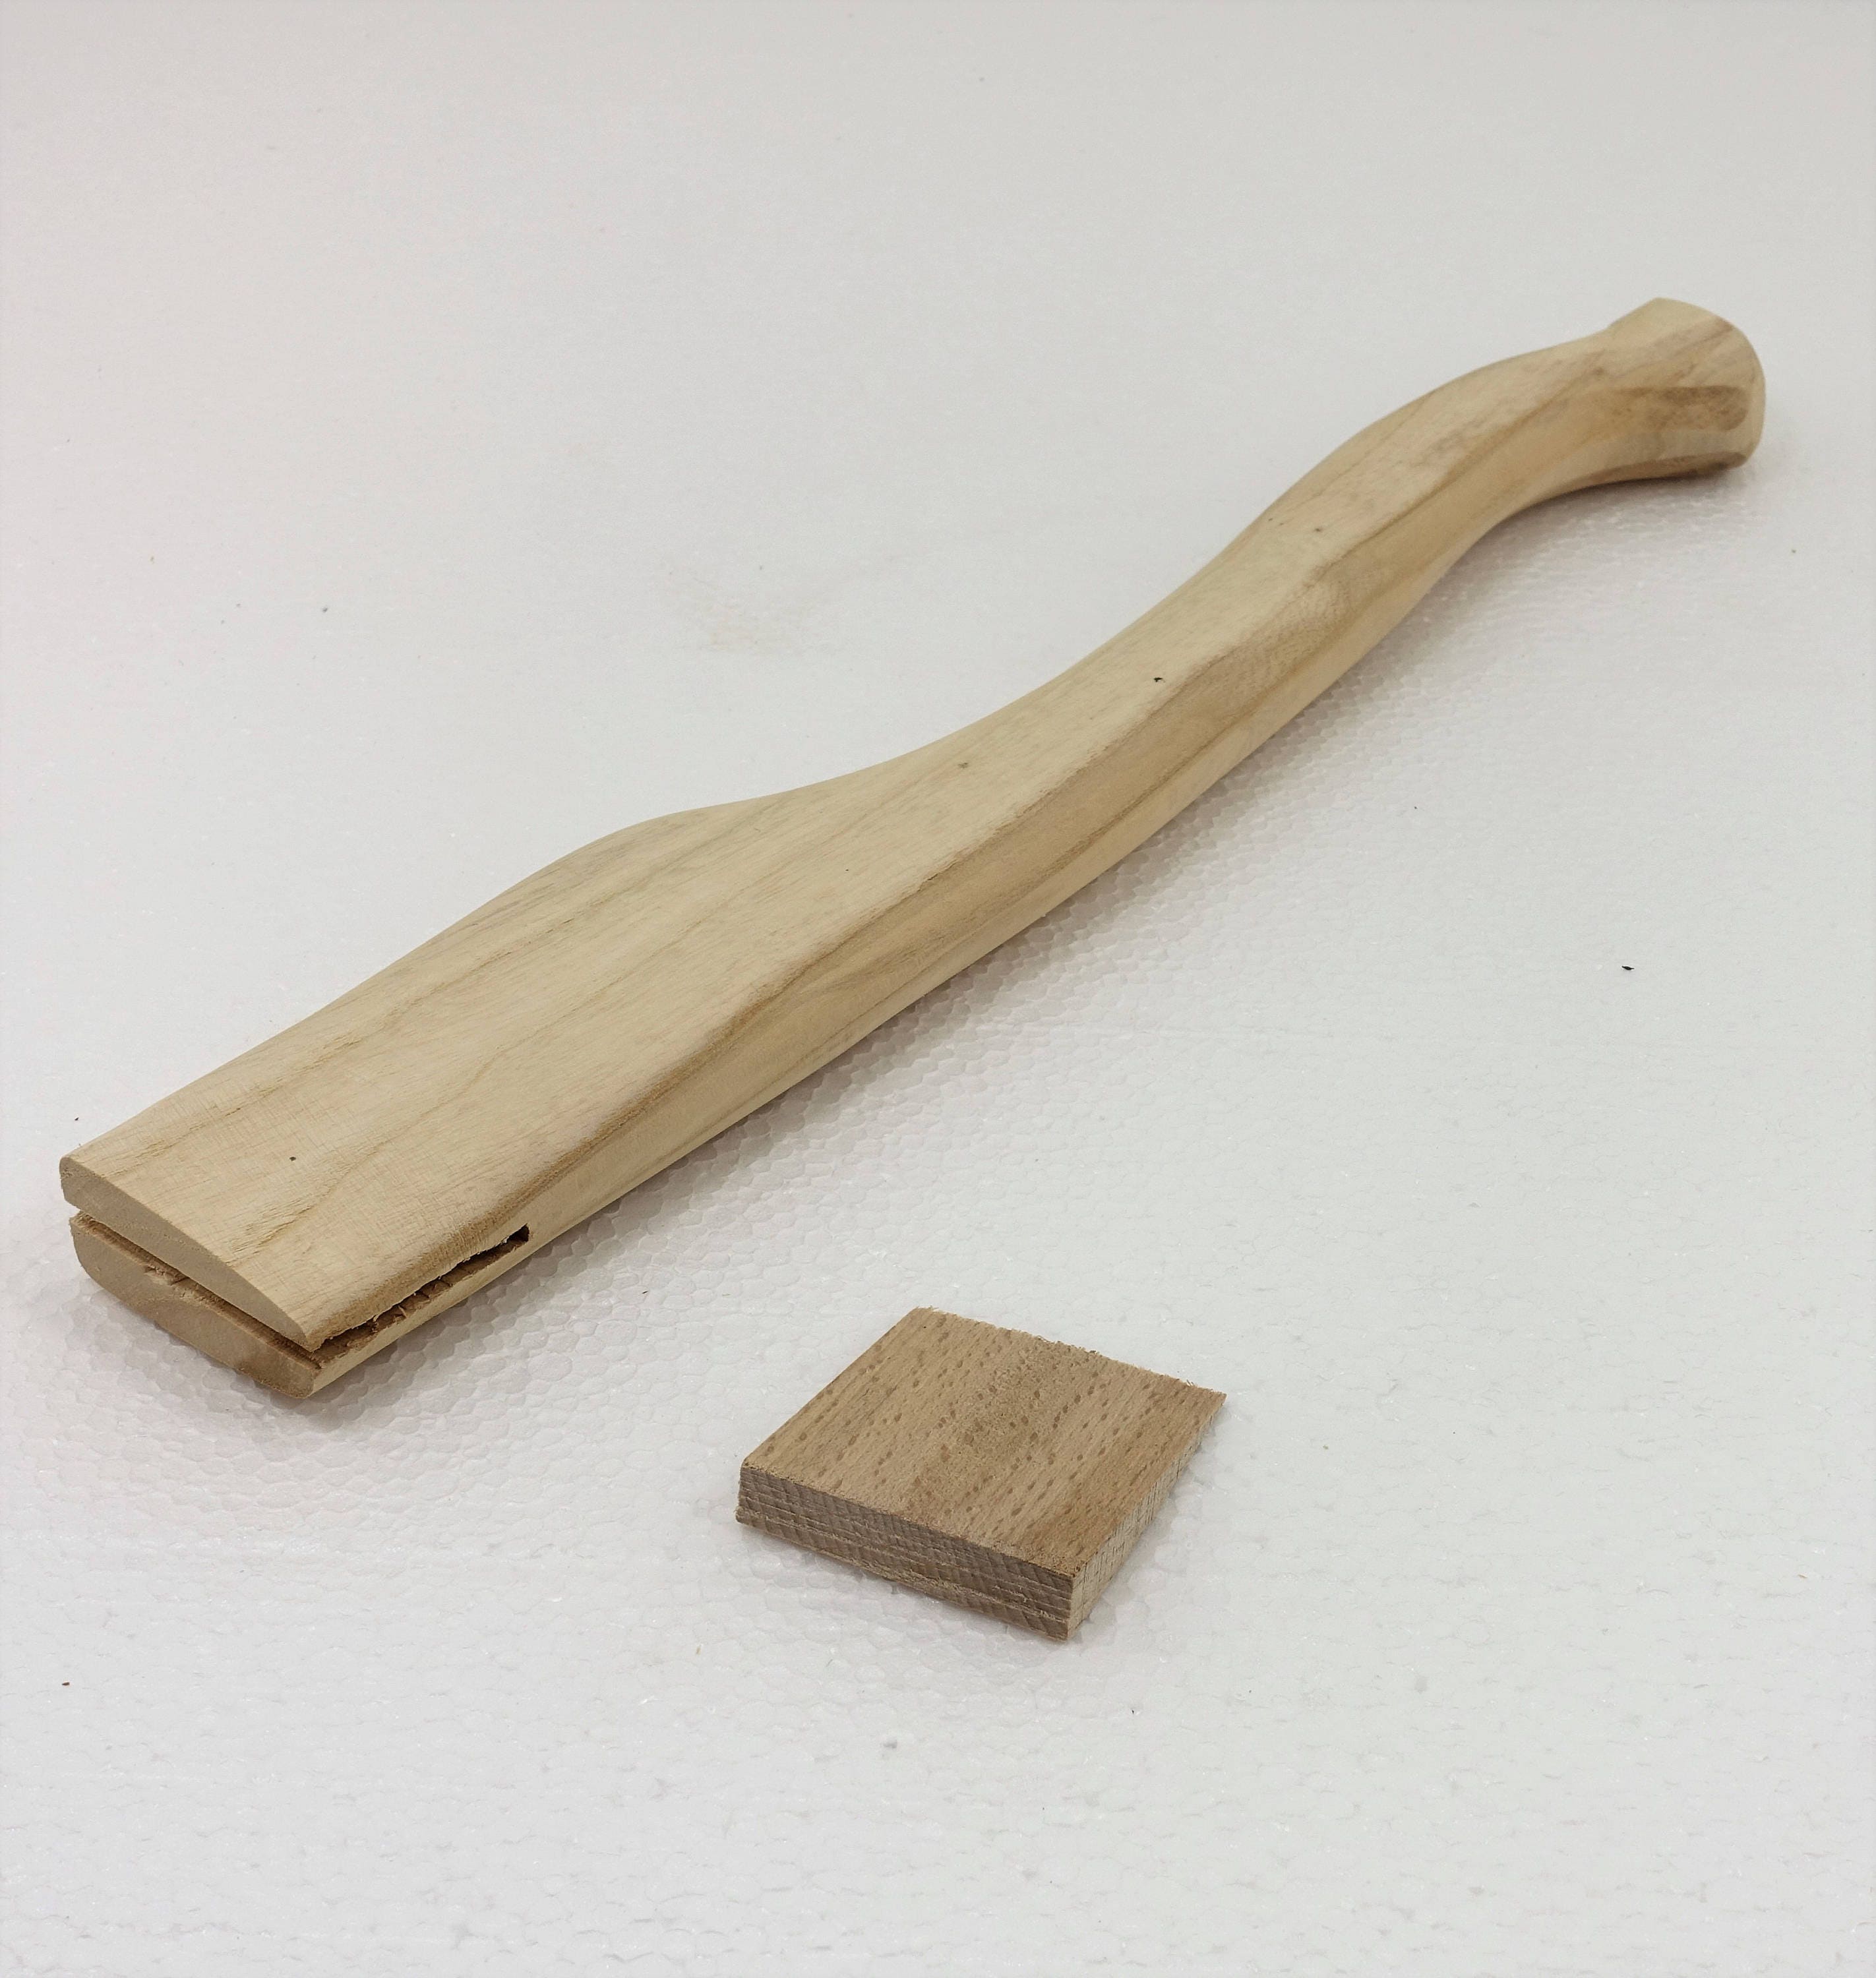 14,4" Ash wood axe handle replacement handle Flat Eye Style 